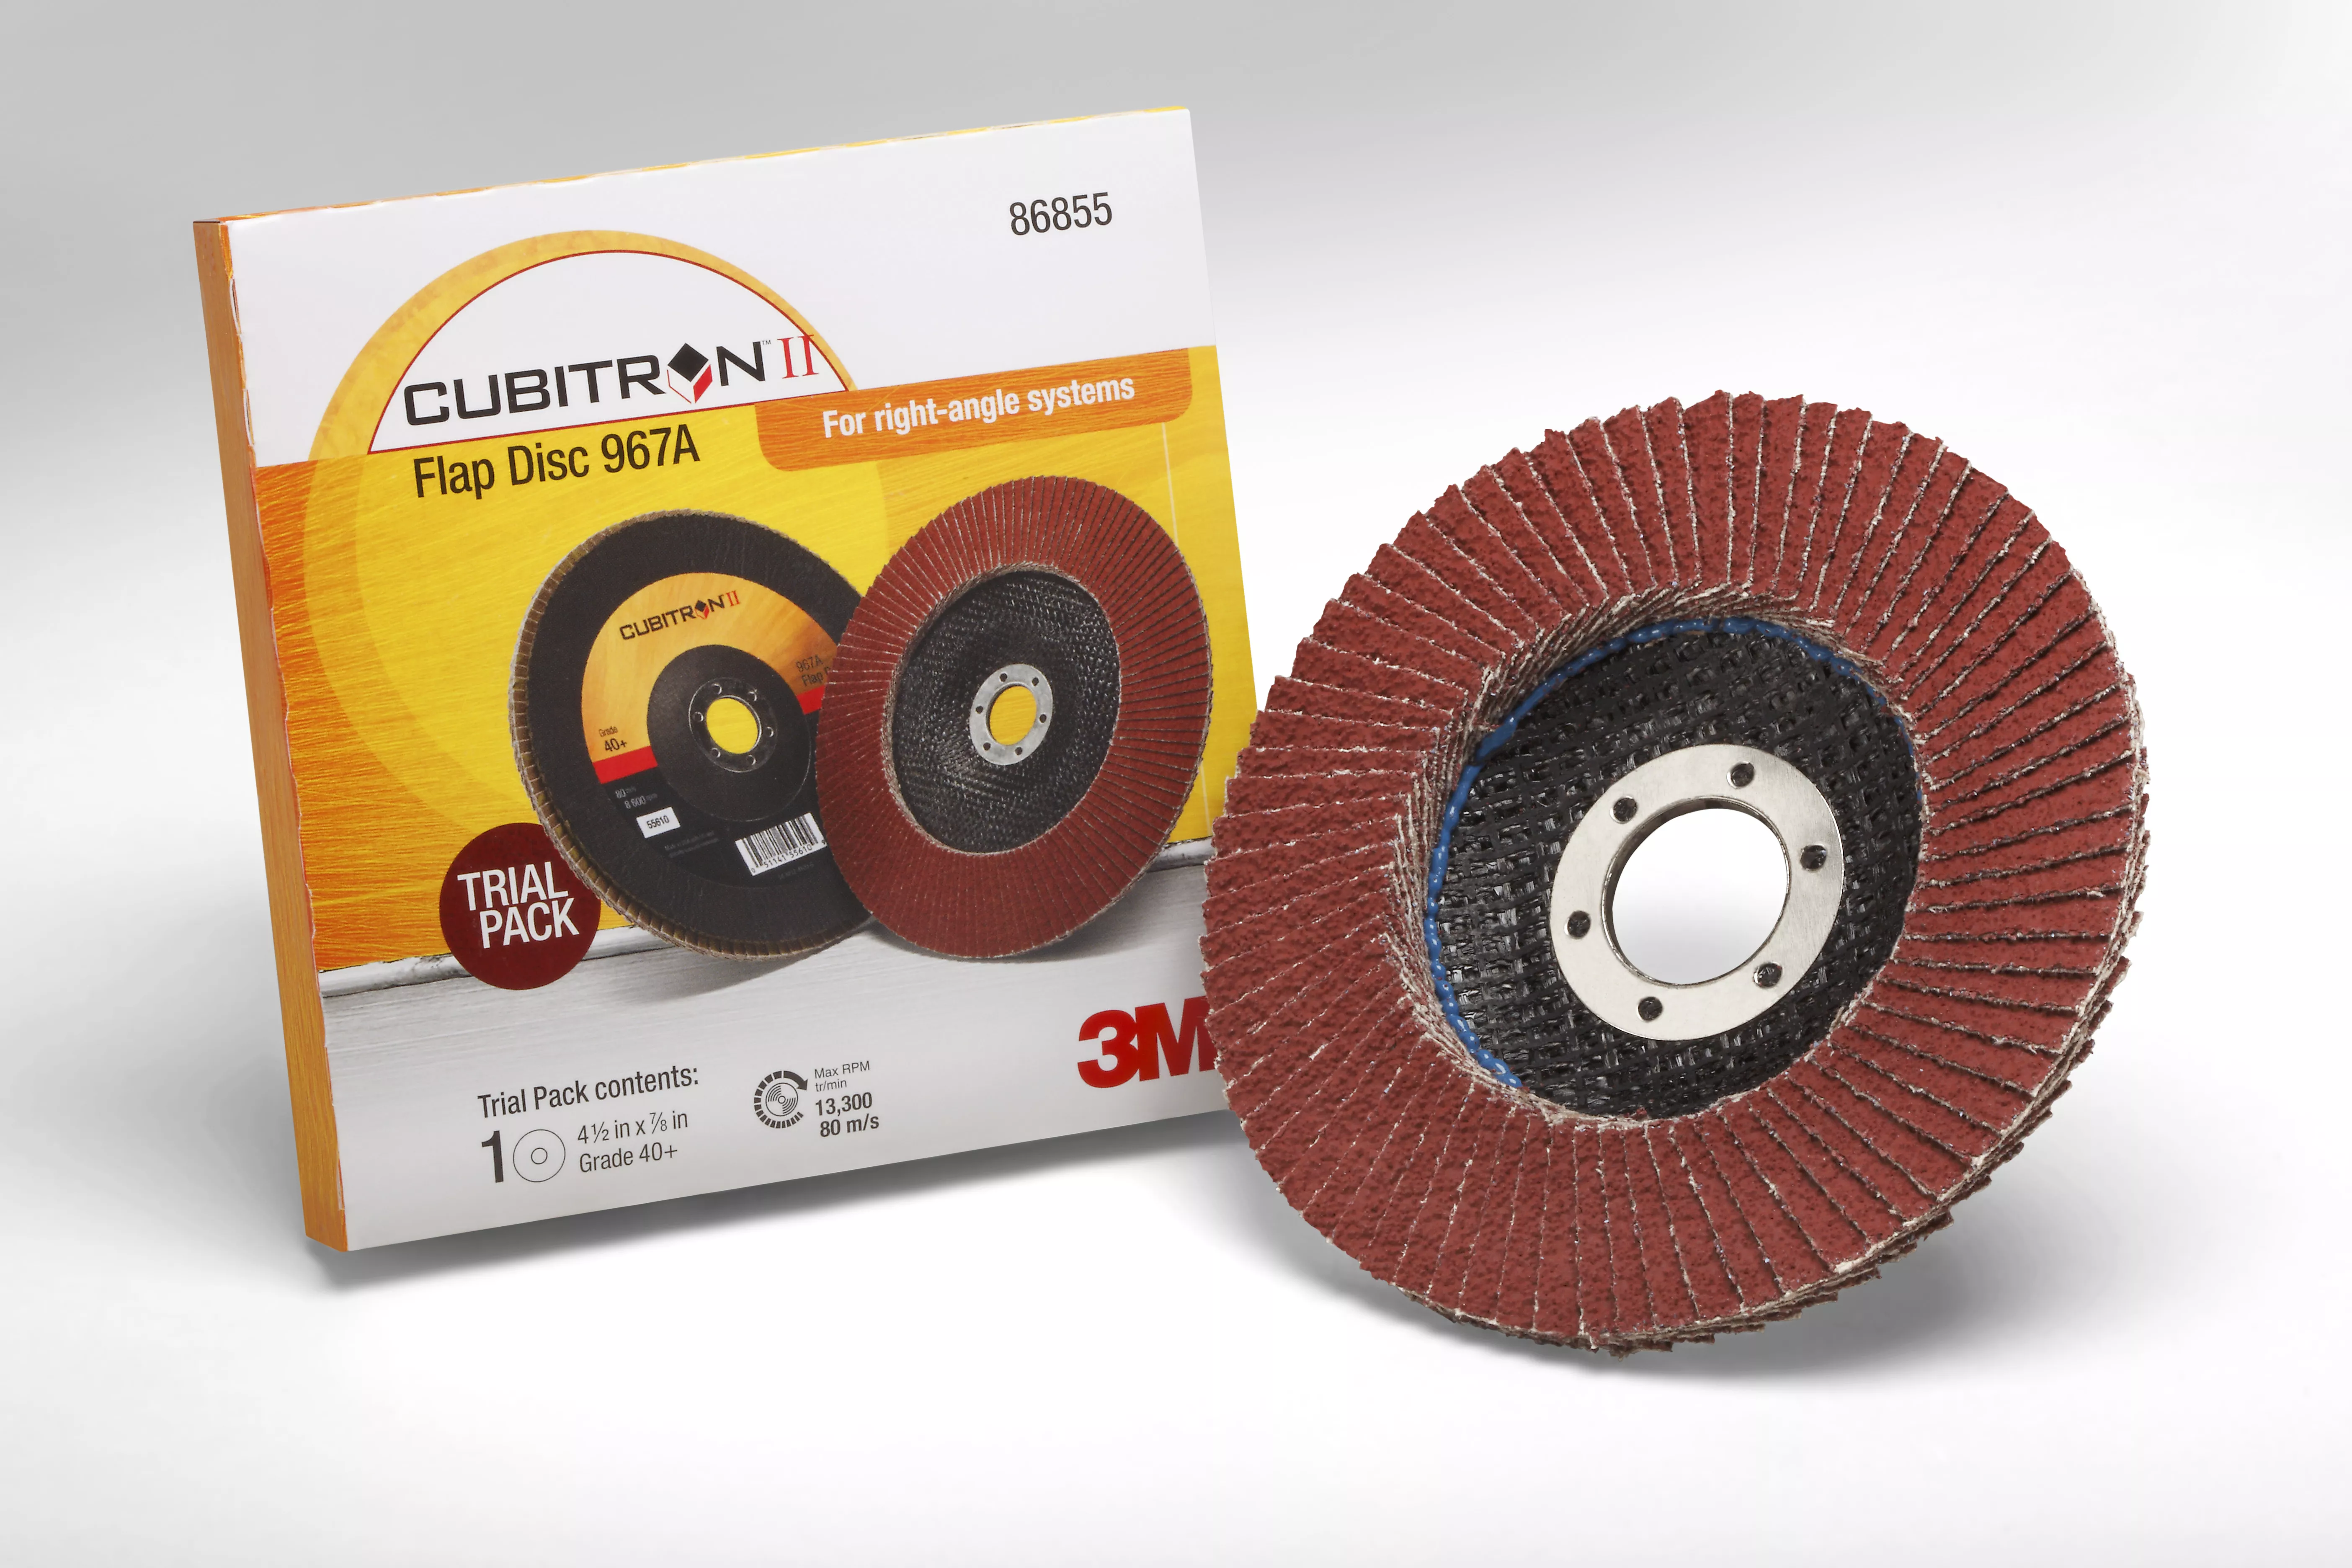 3M™ Cubitron™ II Flap Disc 967A, 40+, T27, 4-1/2 in x 7/8 in, 10
ea/Case, Single Pack